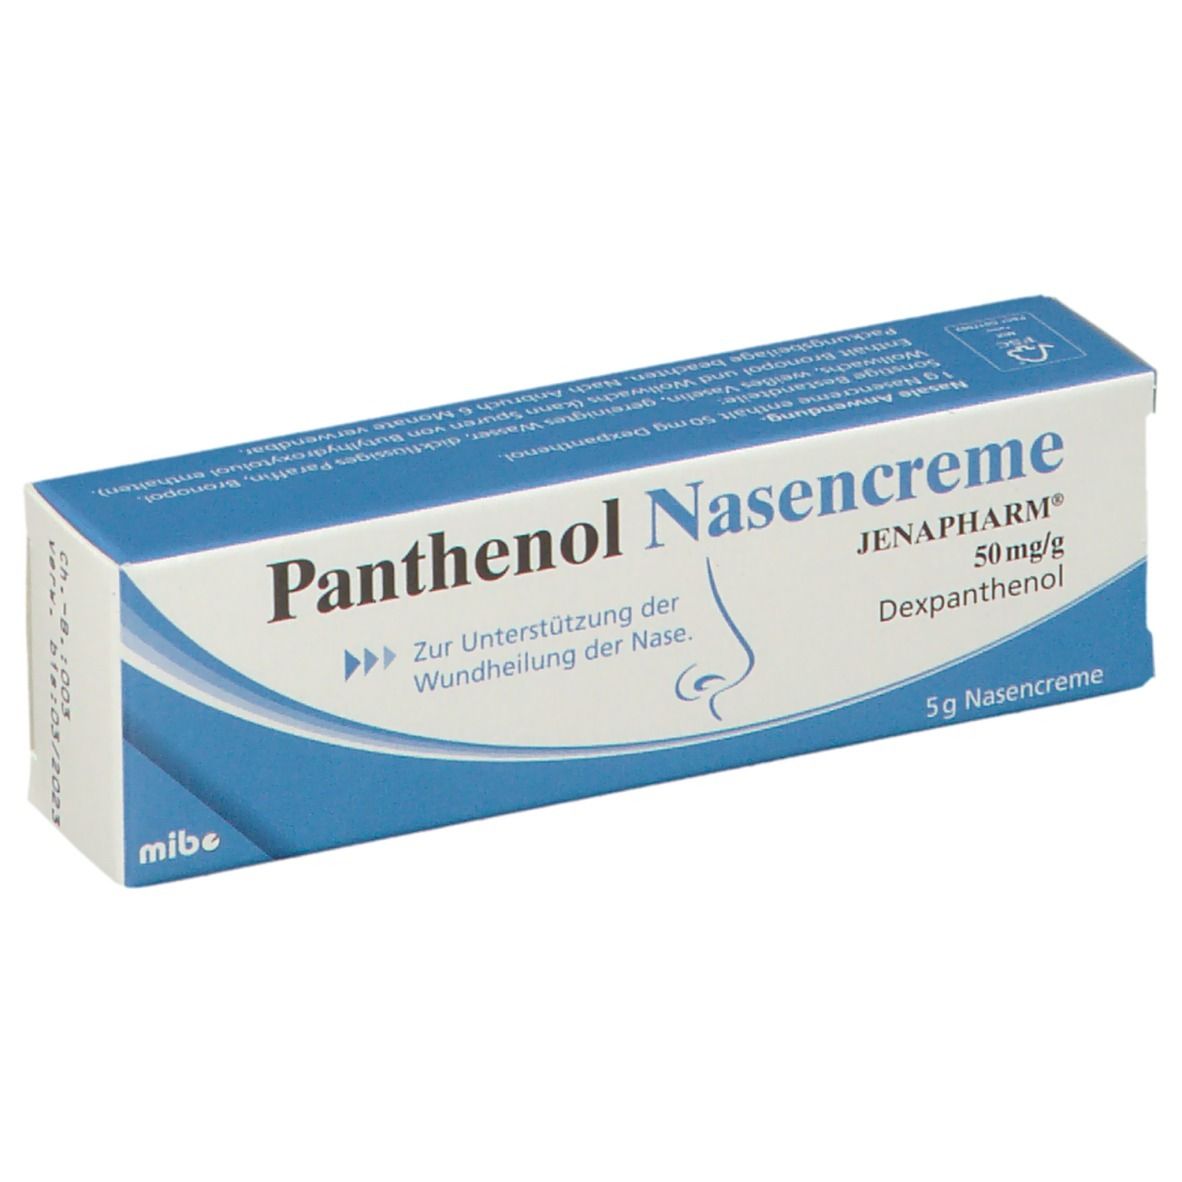 Panthenol Nasencreme Jenapharm®